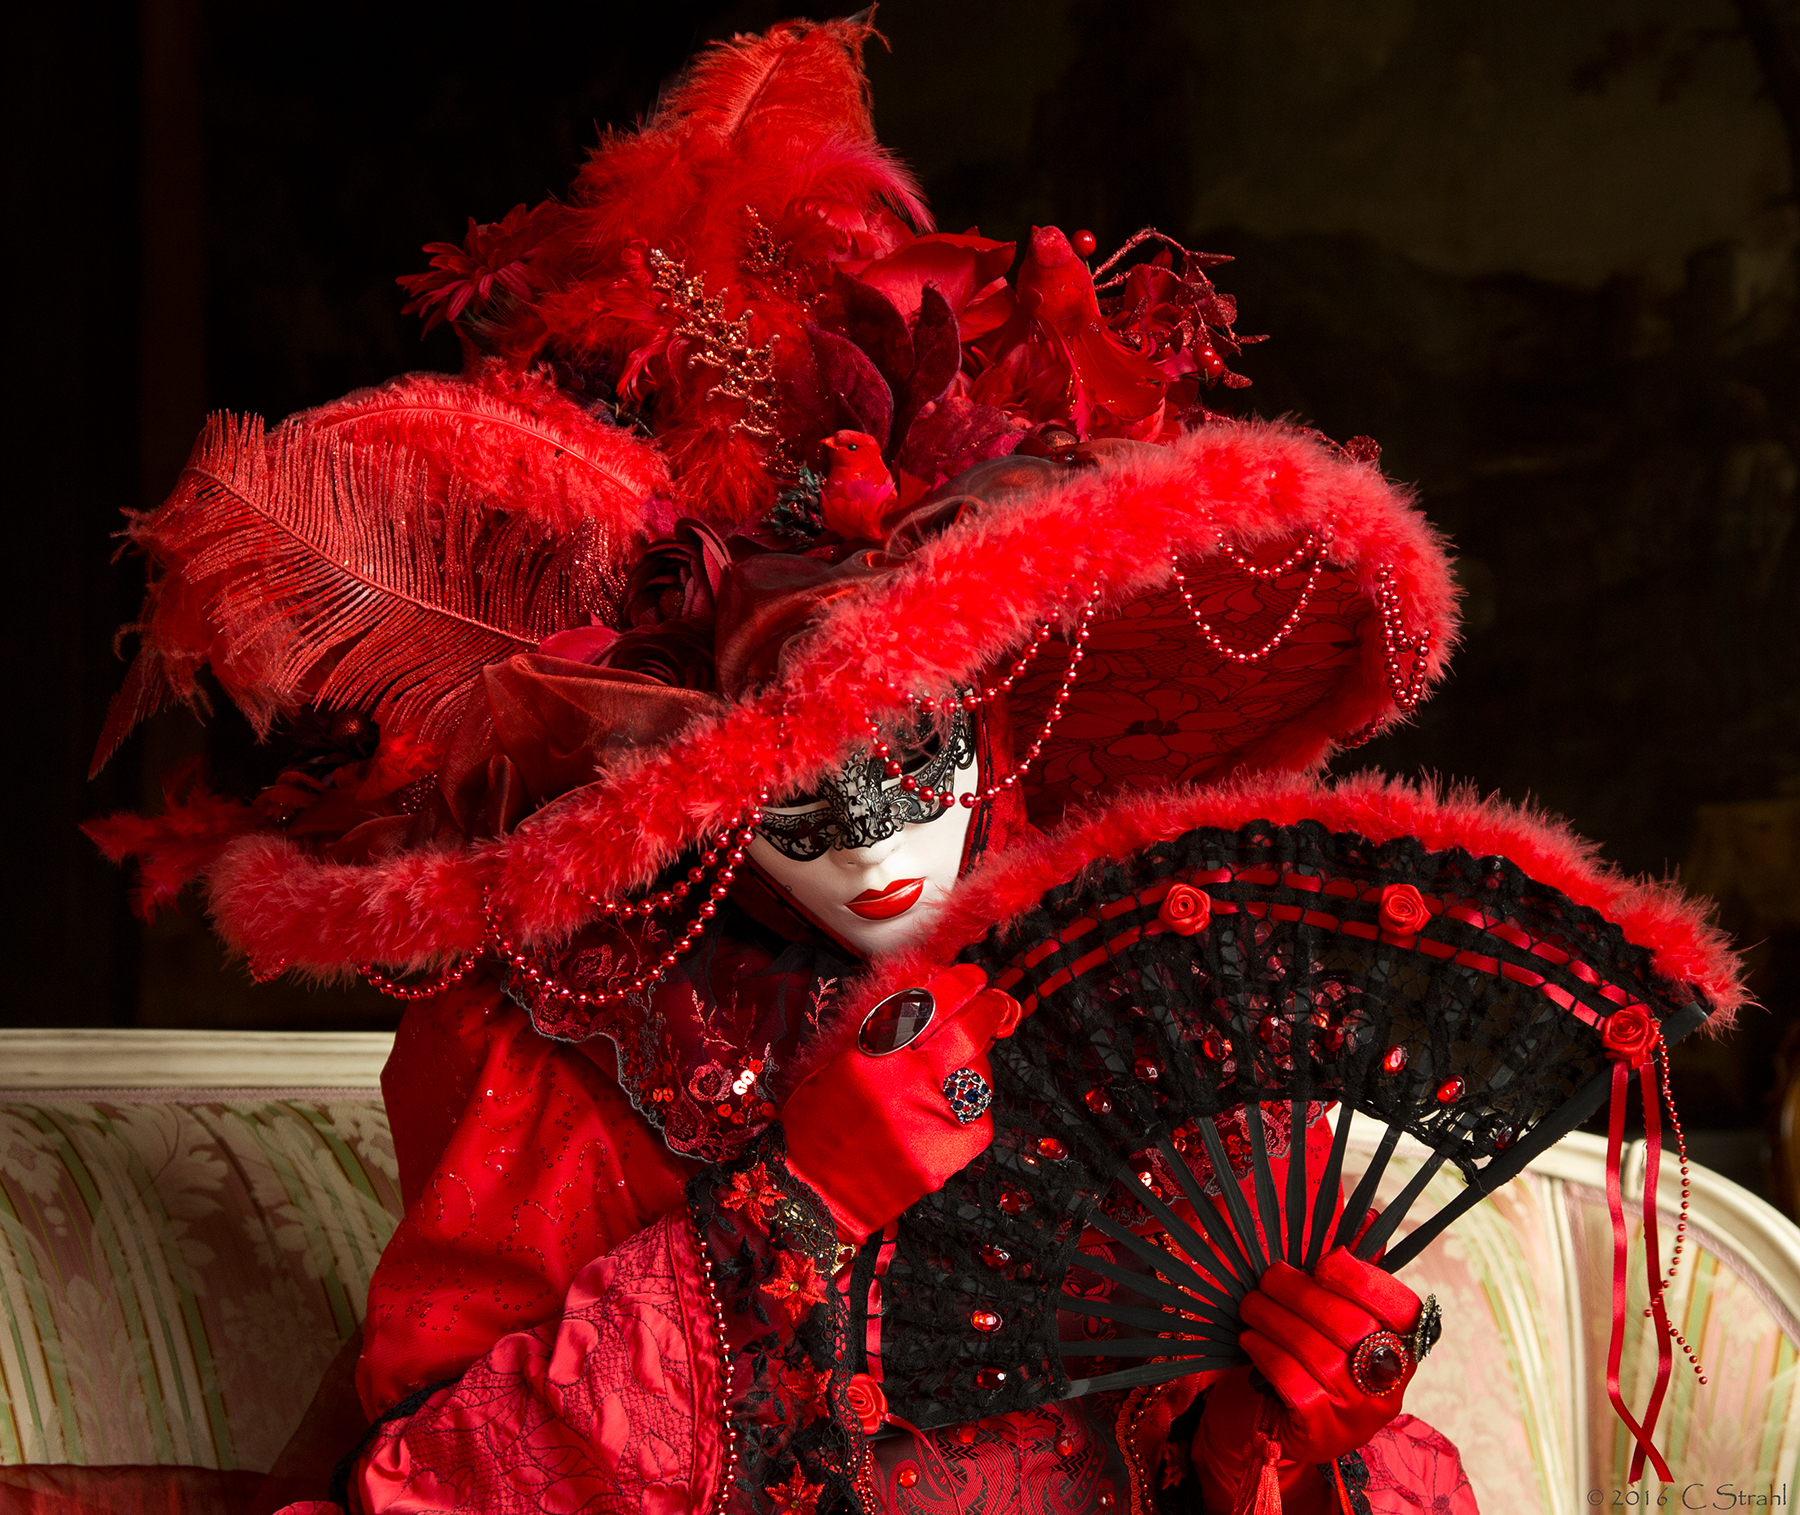 Wallpapers Venetian masks Carnival Venice carnival in venice on the desktop